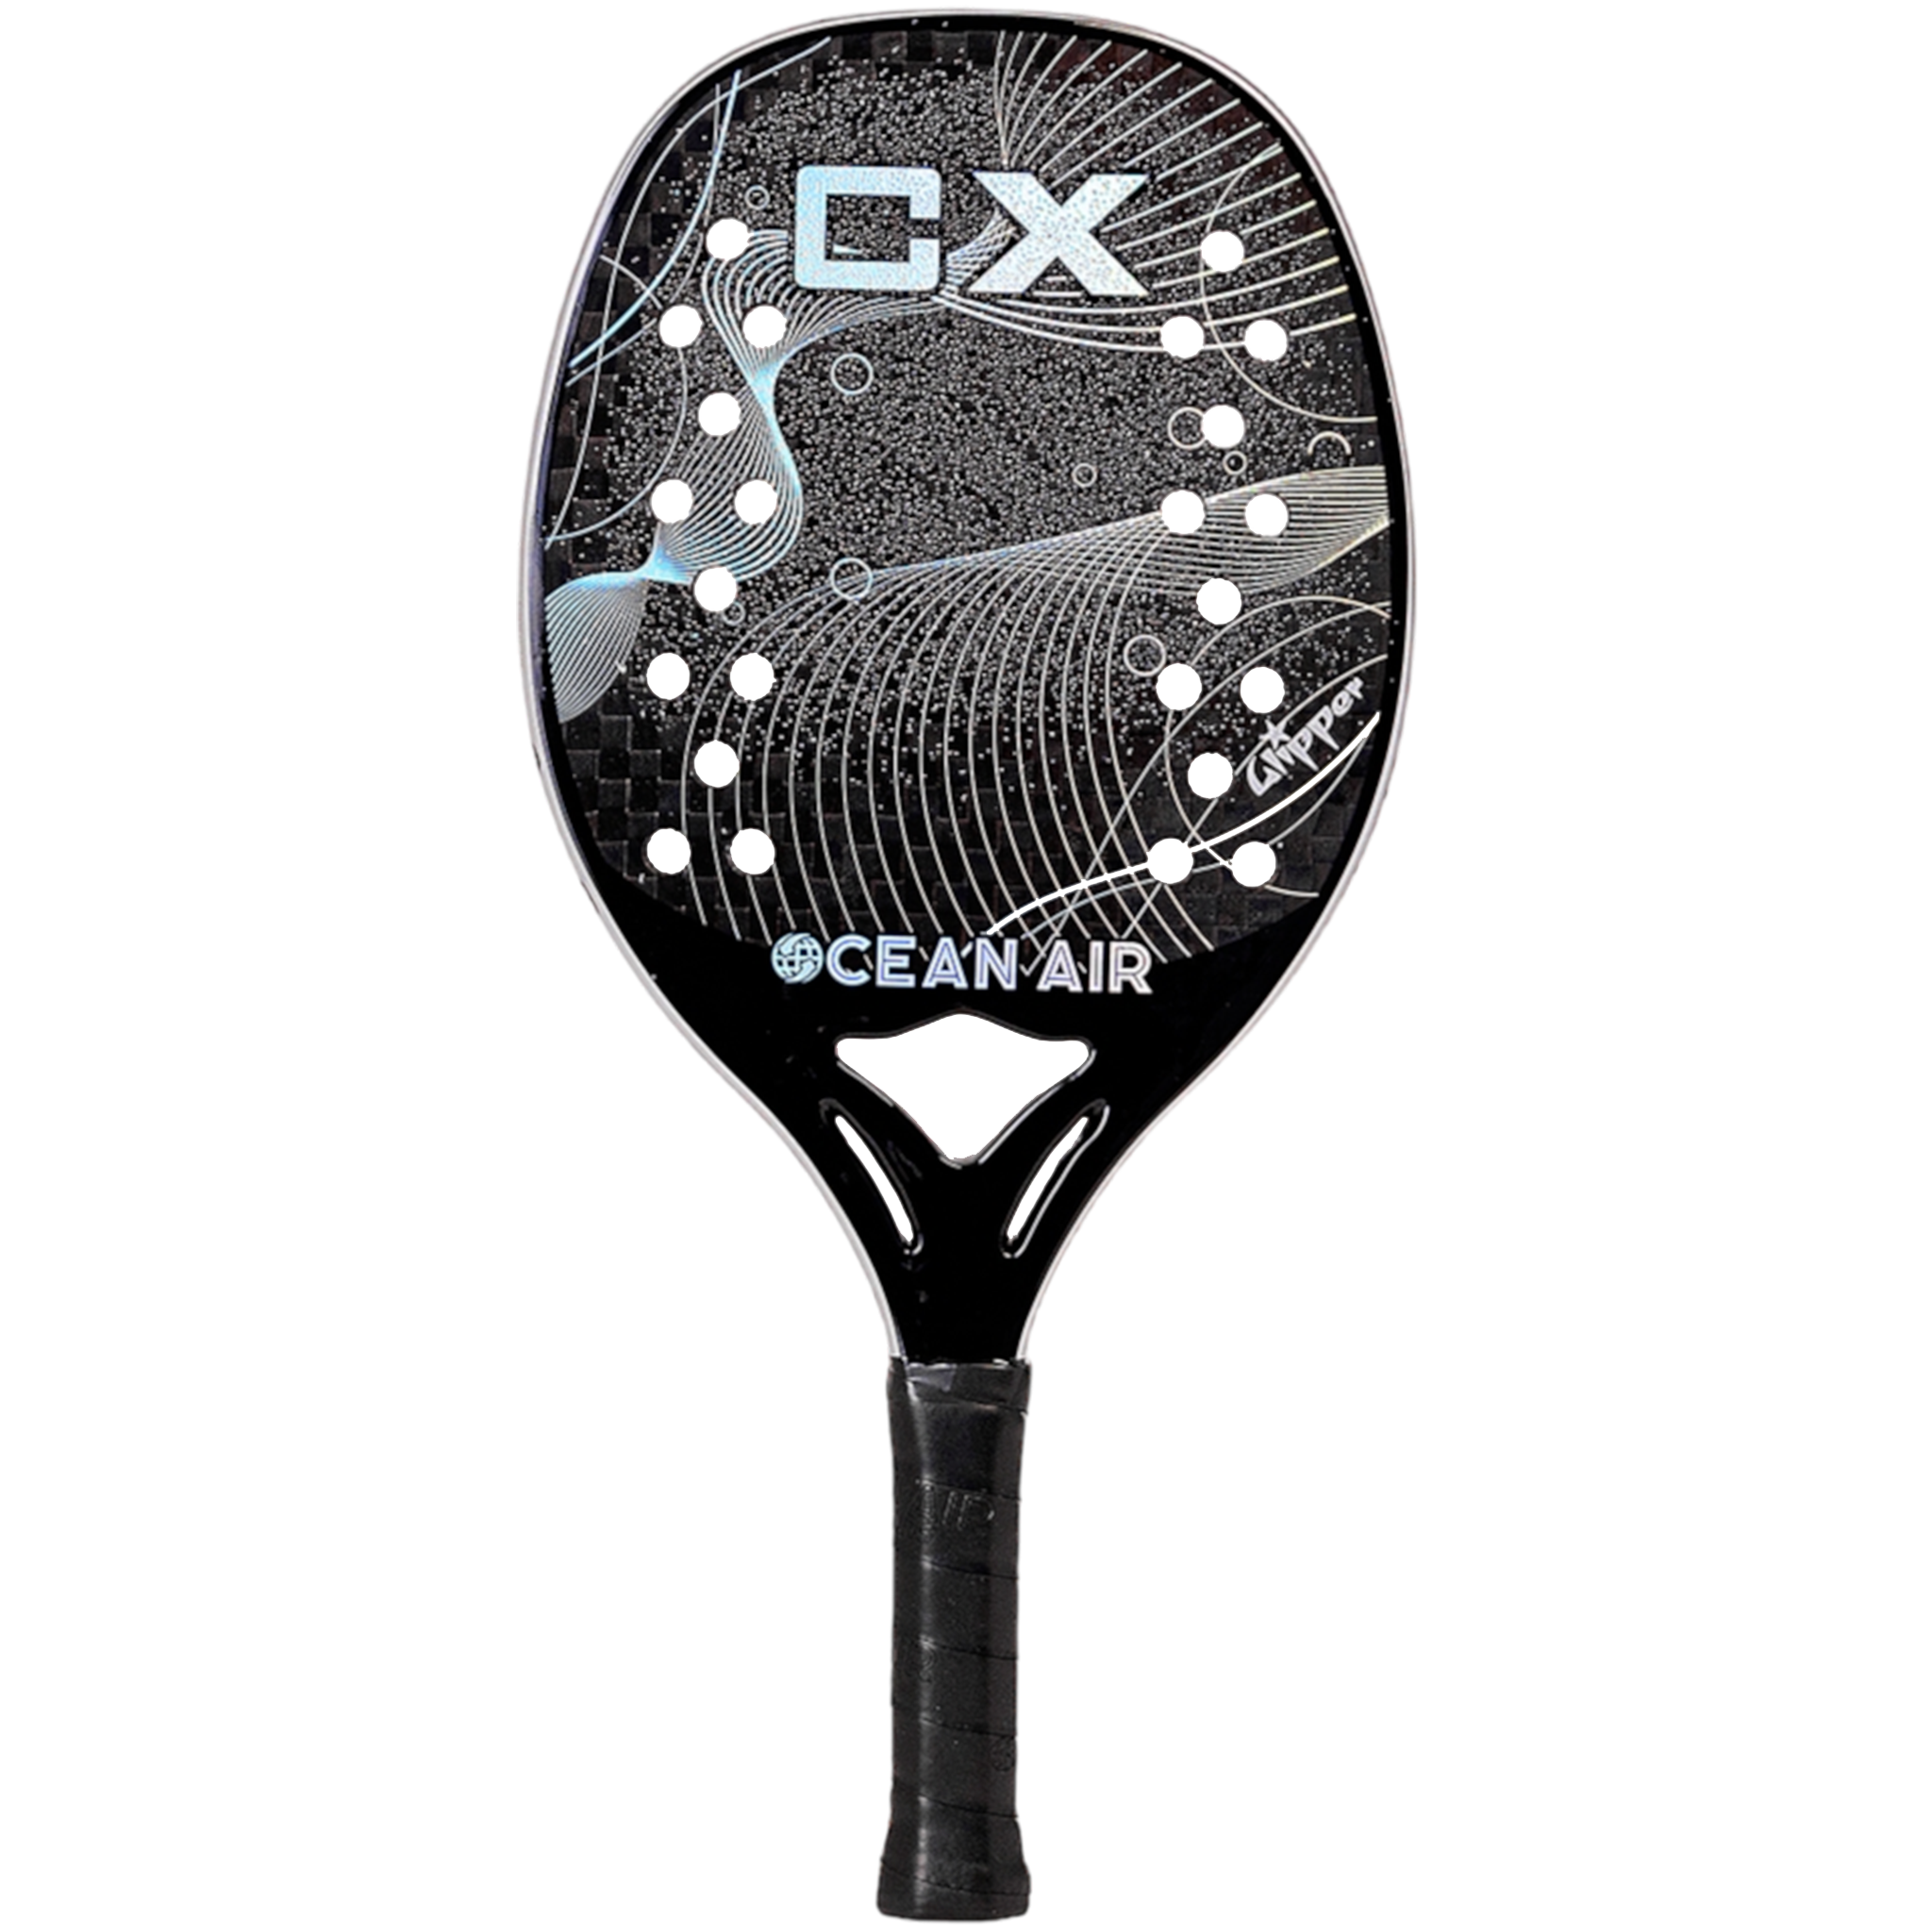 Ocean Air CX 2023 + Glipper Treatment